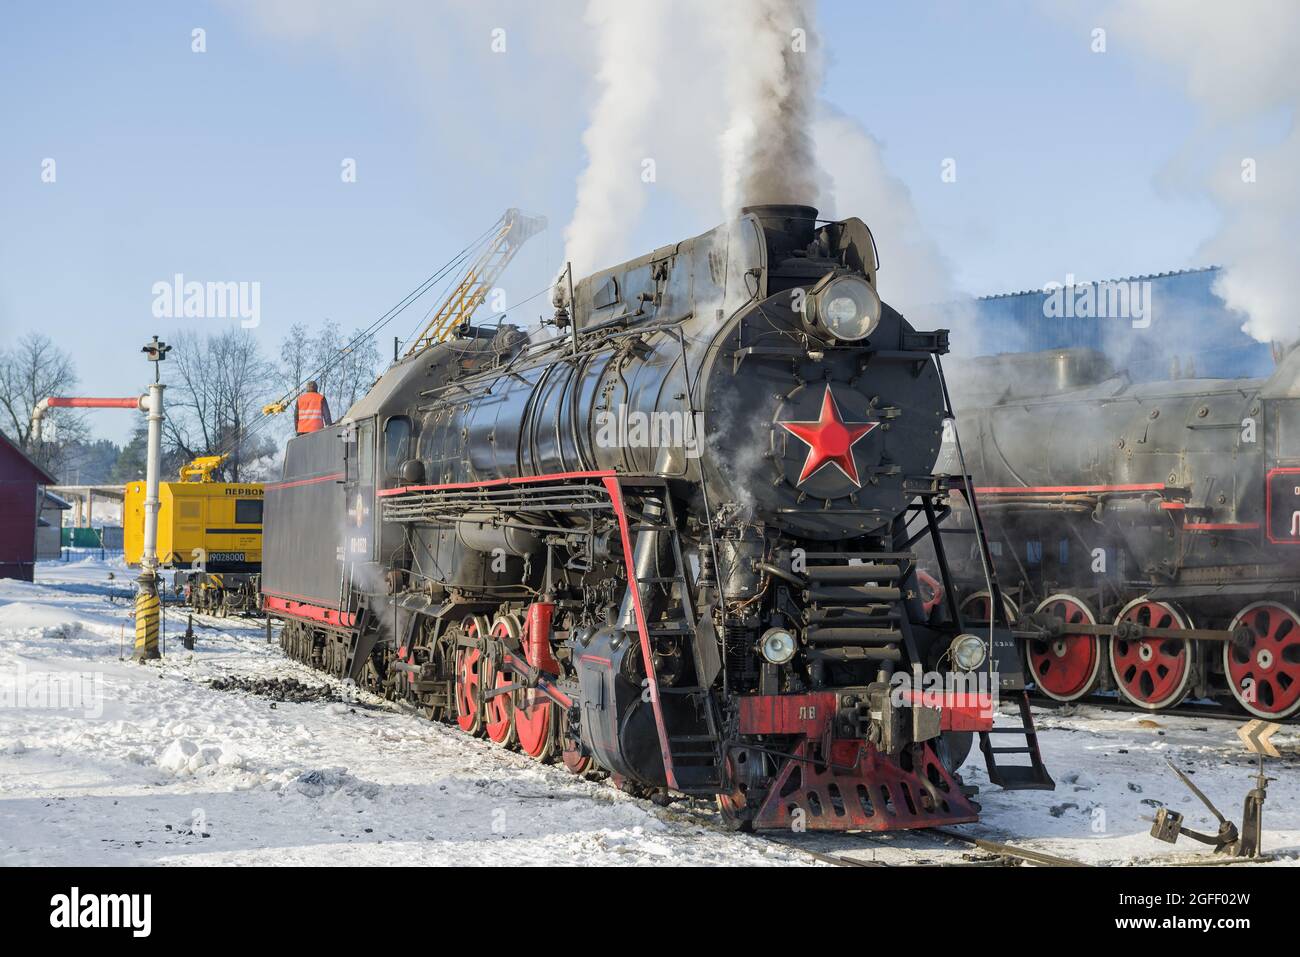 SORTAVALA, RUSSIE - 10 MARS 2021 : ancienne locomotive à vapeur de cargaison soviétique de la série 'LV' à la station de Sortavala, le matin d'hiver glacial Banque D'Images